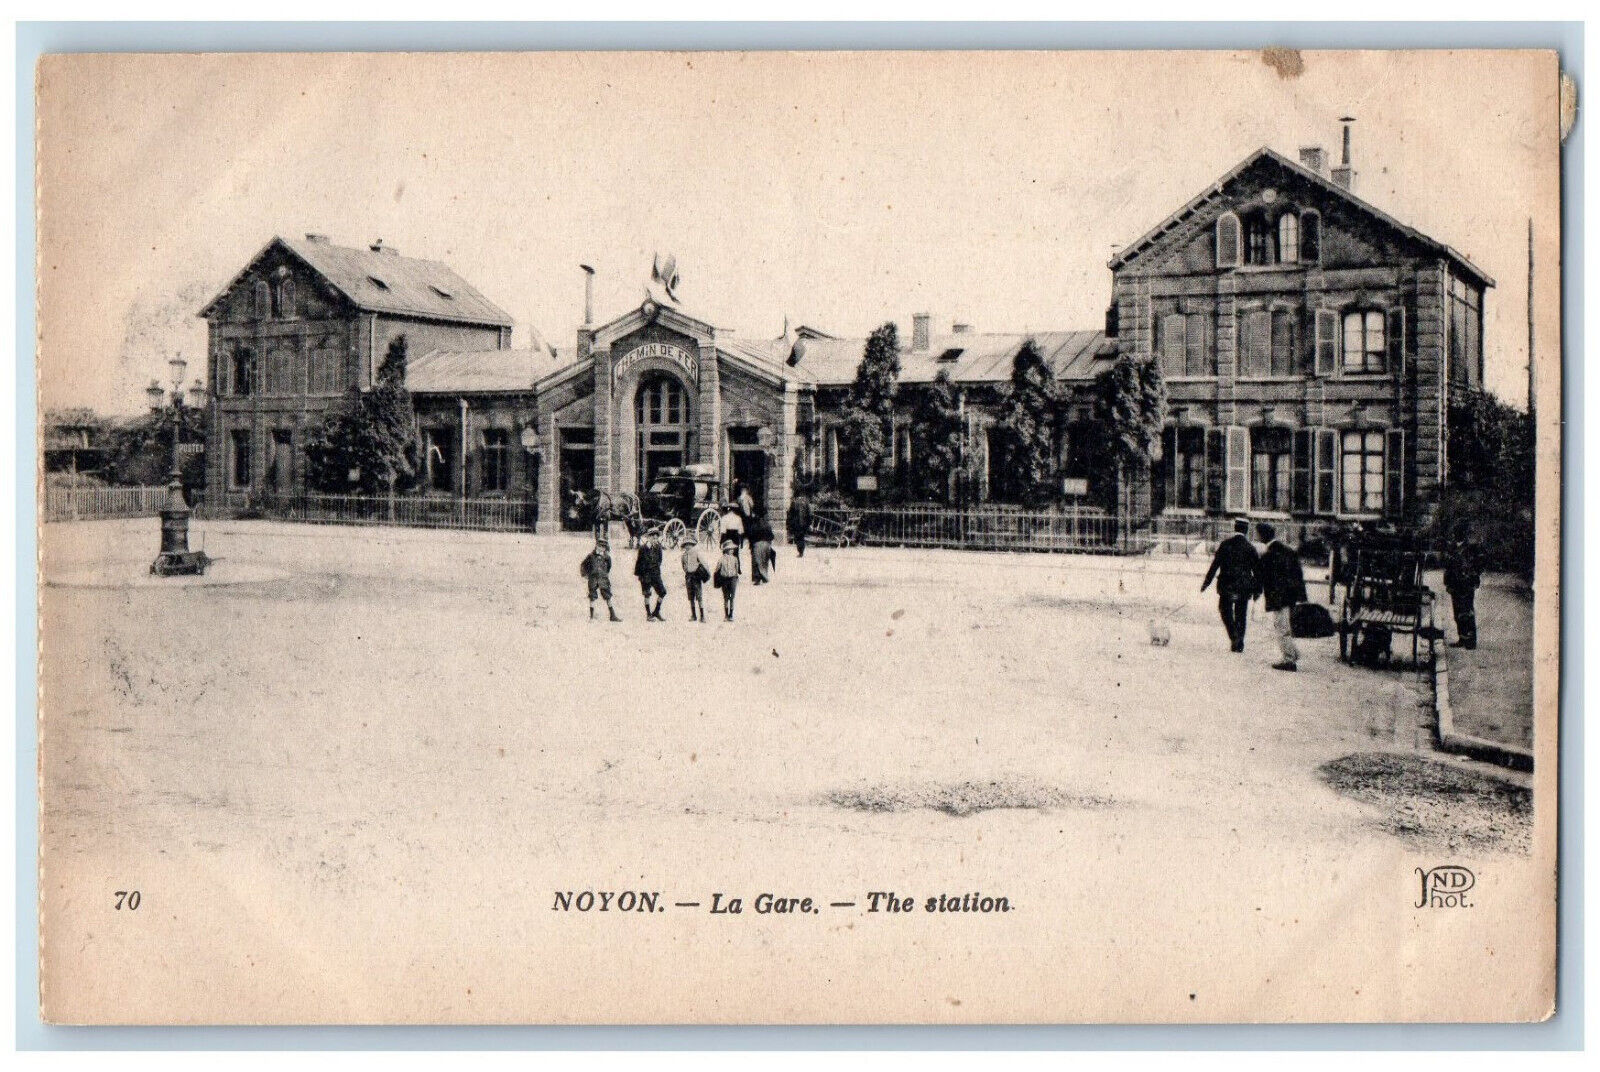 Noyon Hauts De France Oise France Postcard The Station c1910 Unposted